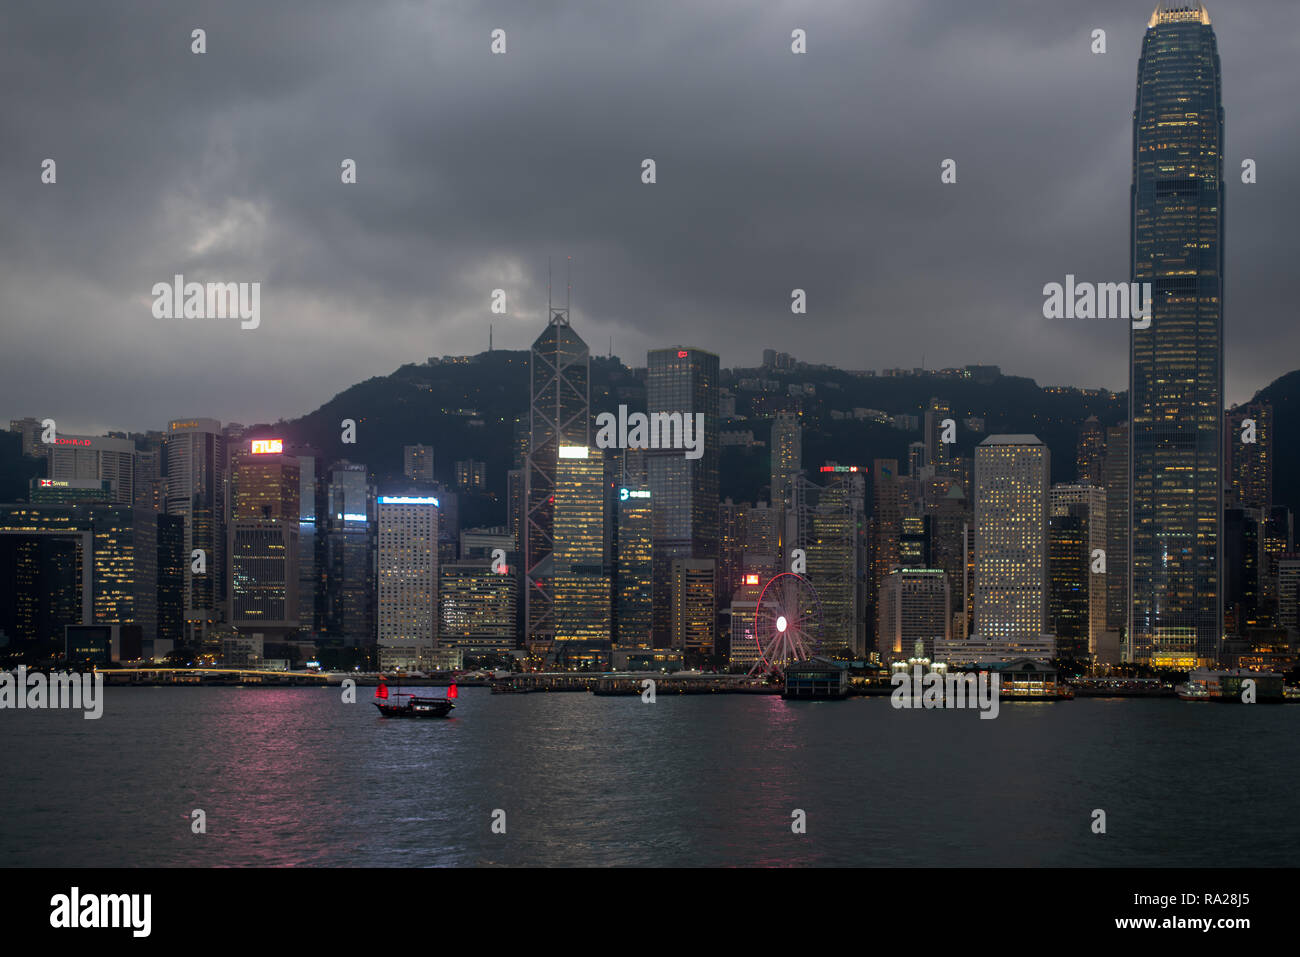 Le rouge vif élan de la Duk Ling'junk accents les lumières des gratte-ciel qui bordent le port de Hong Kong. Banque D'Images